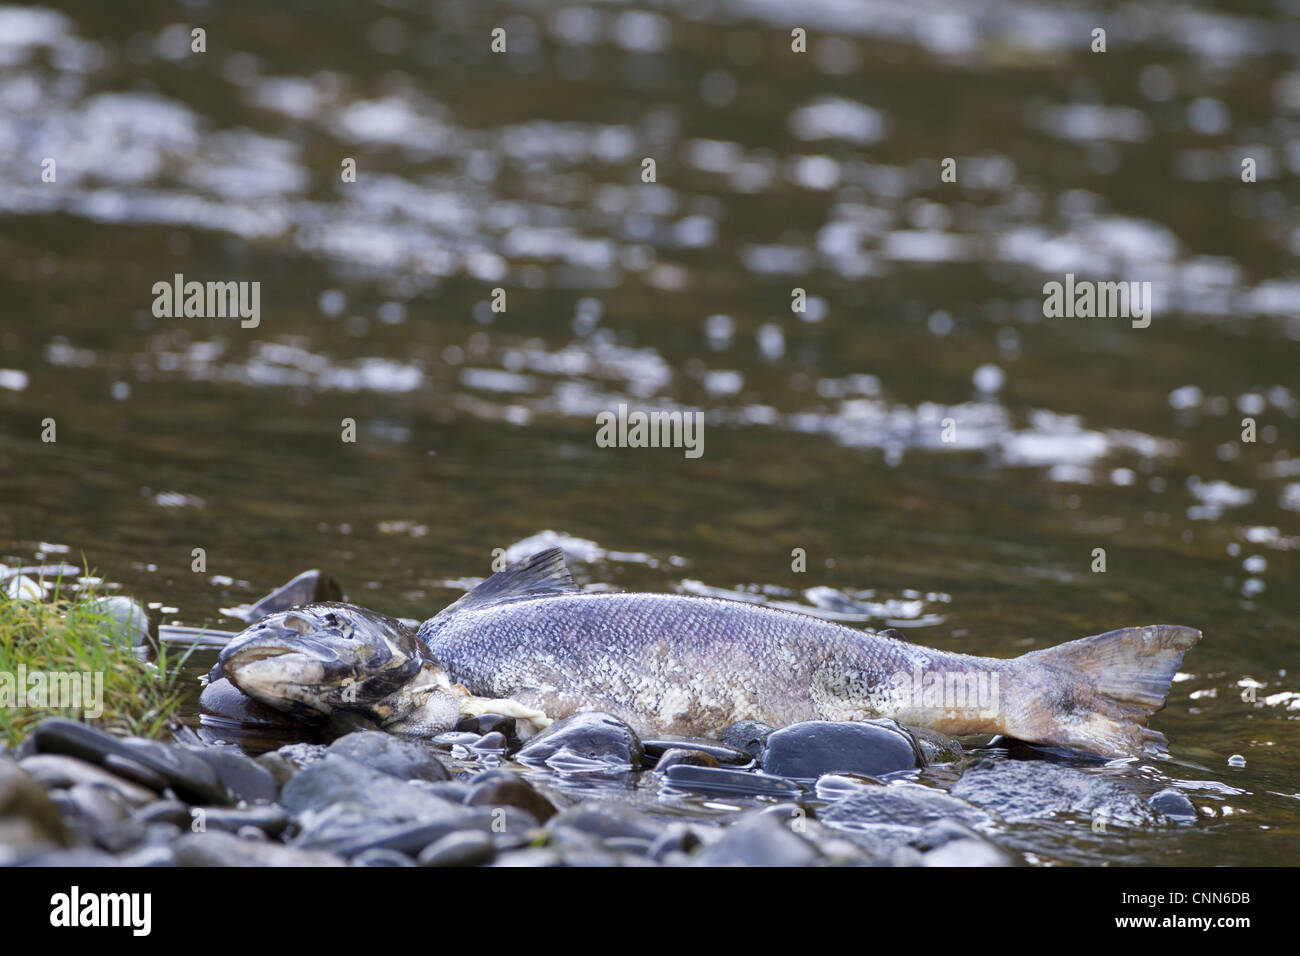 Saumon atlantique Salmo salar adultes morts étaient antérieurs récupérés échoués edge River au cours de l'automne Rivière Whiteadder reproduction Banque D'Images